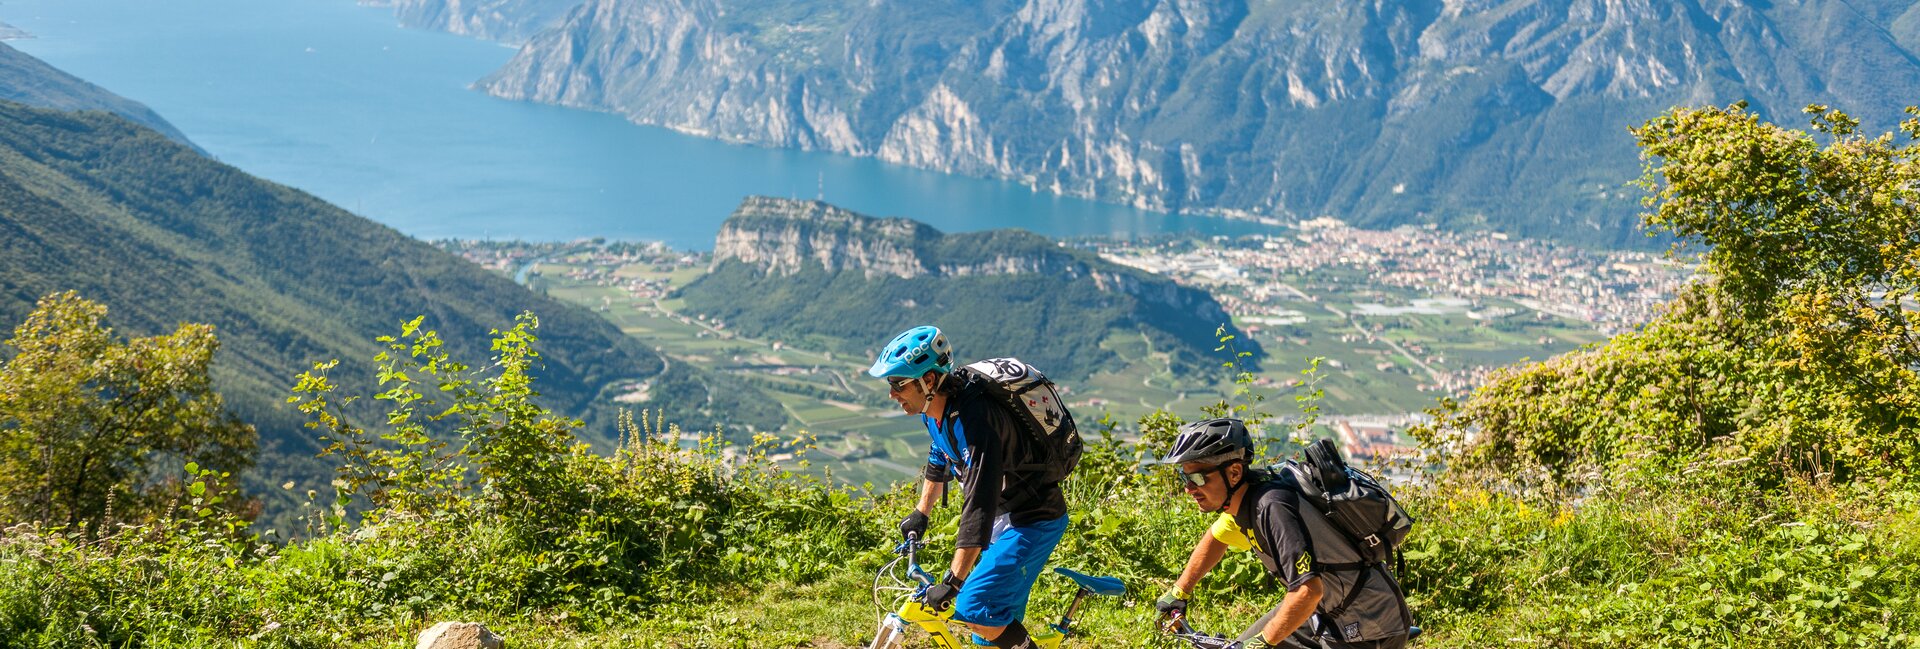 Gardasee - Radreisen - Mountainbiken Urlaub